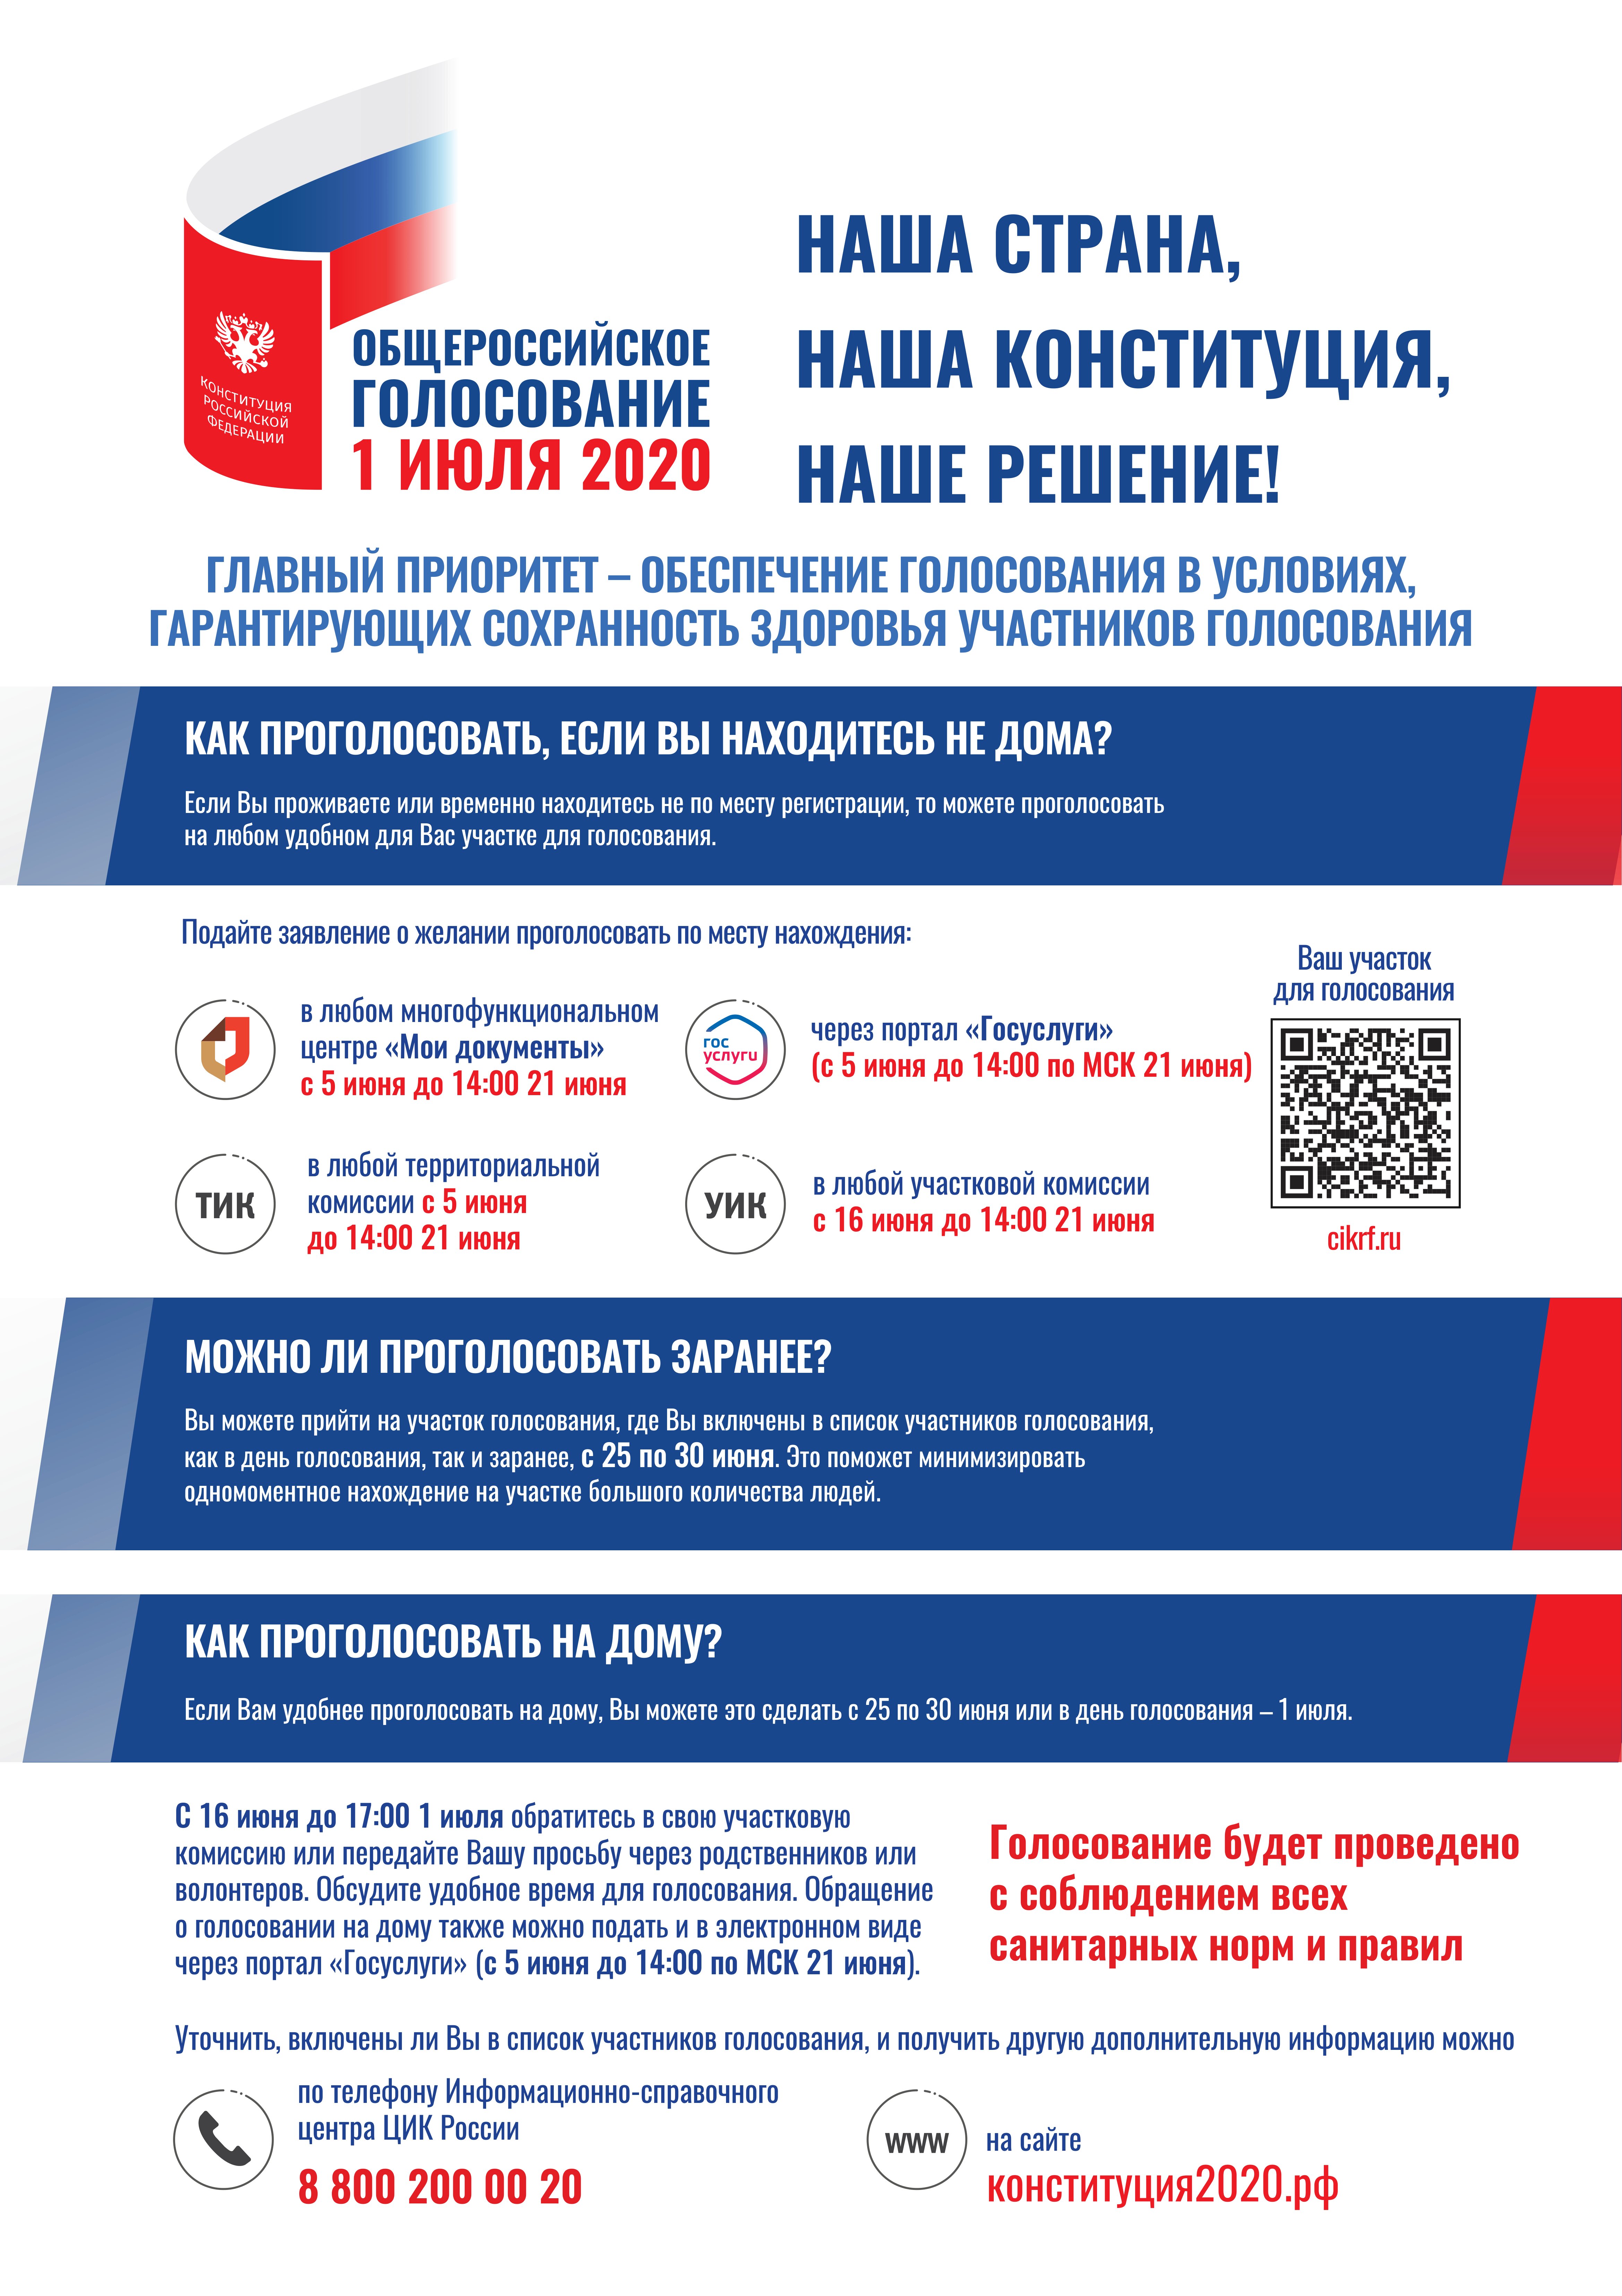 Порядок голосования по изменениям в Конституцию РФ.